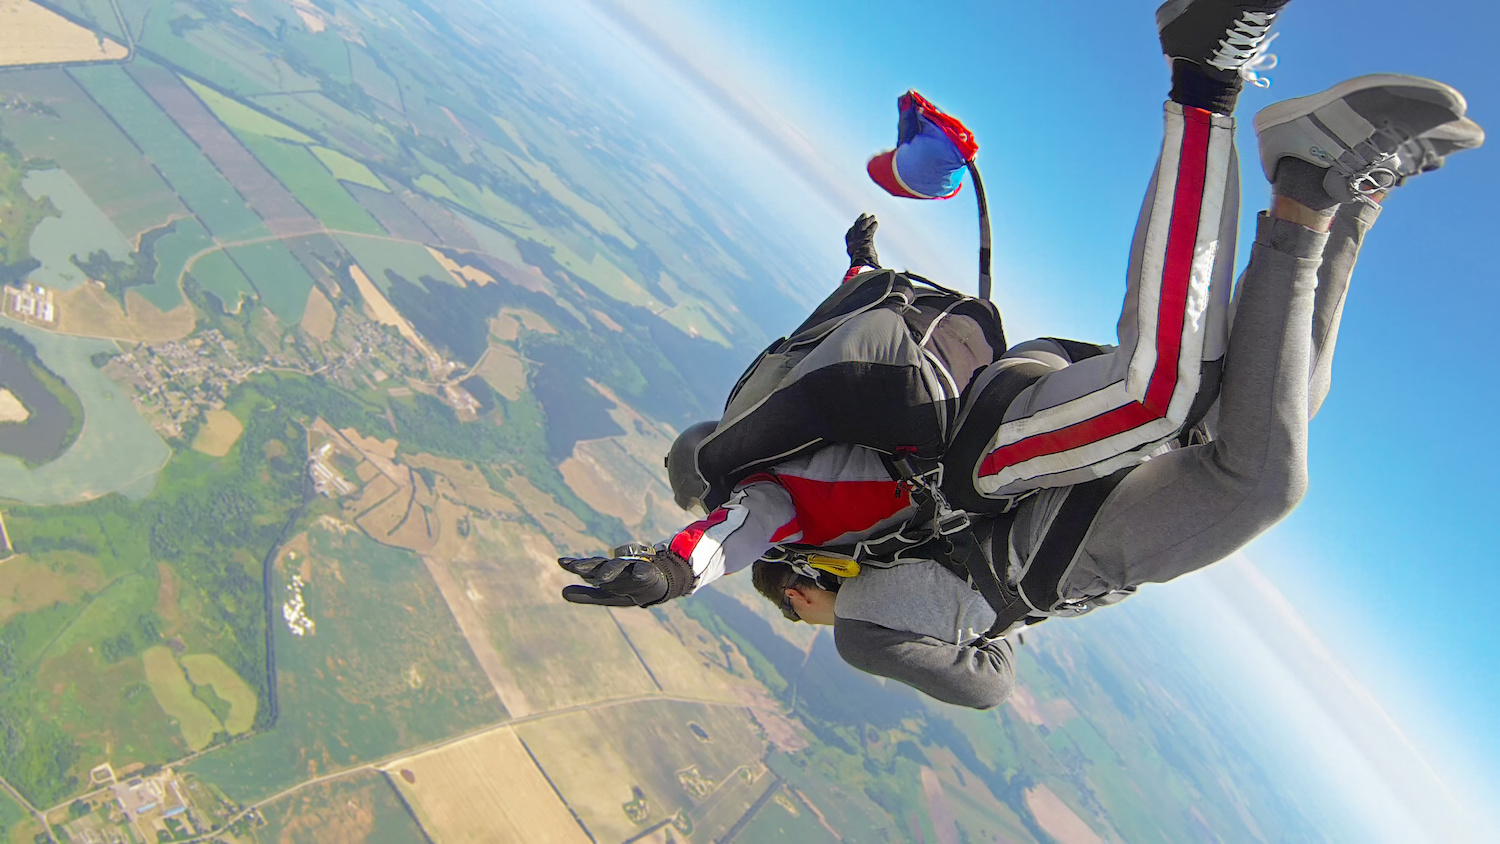 推薦到紐西蘭跳傘一嘗60秒自由落體的極限體驗